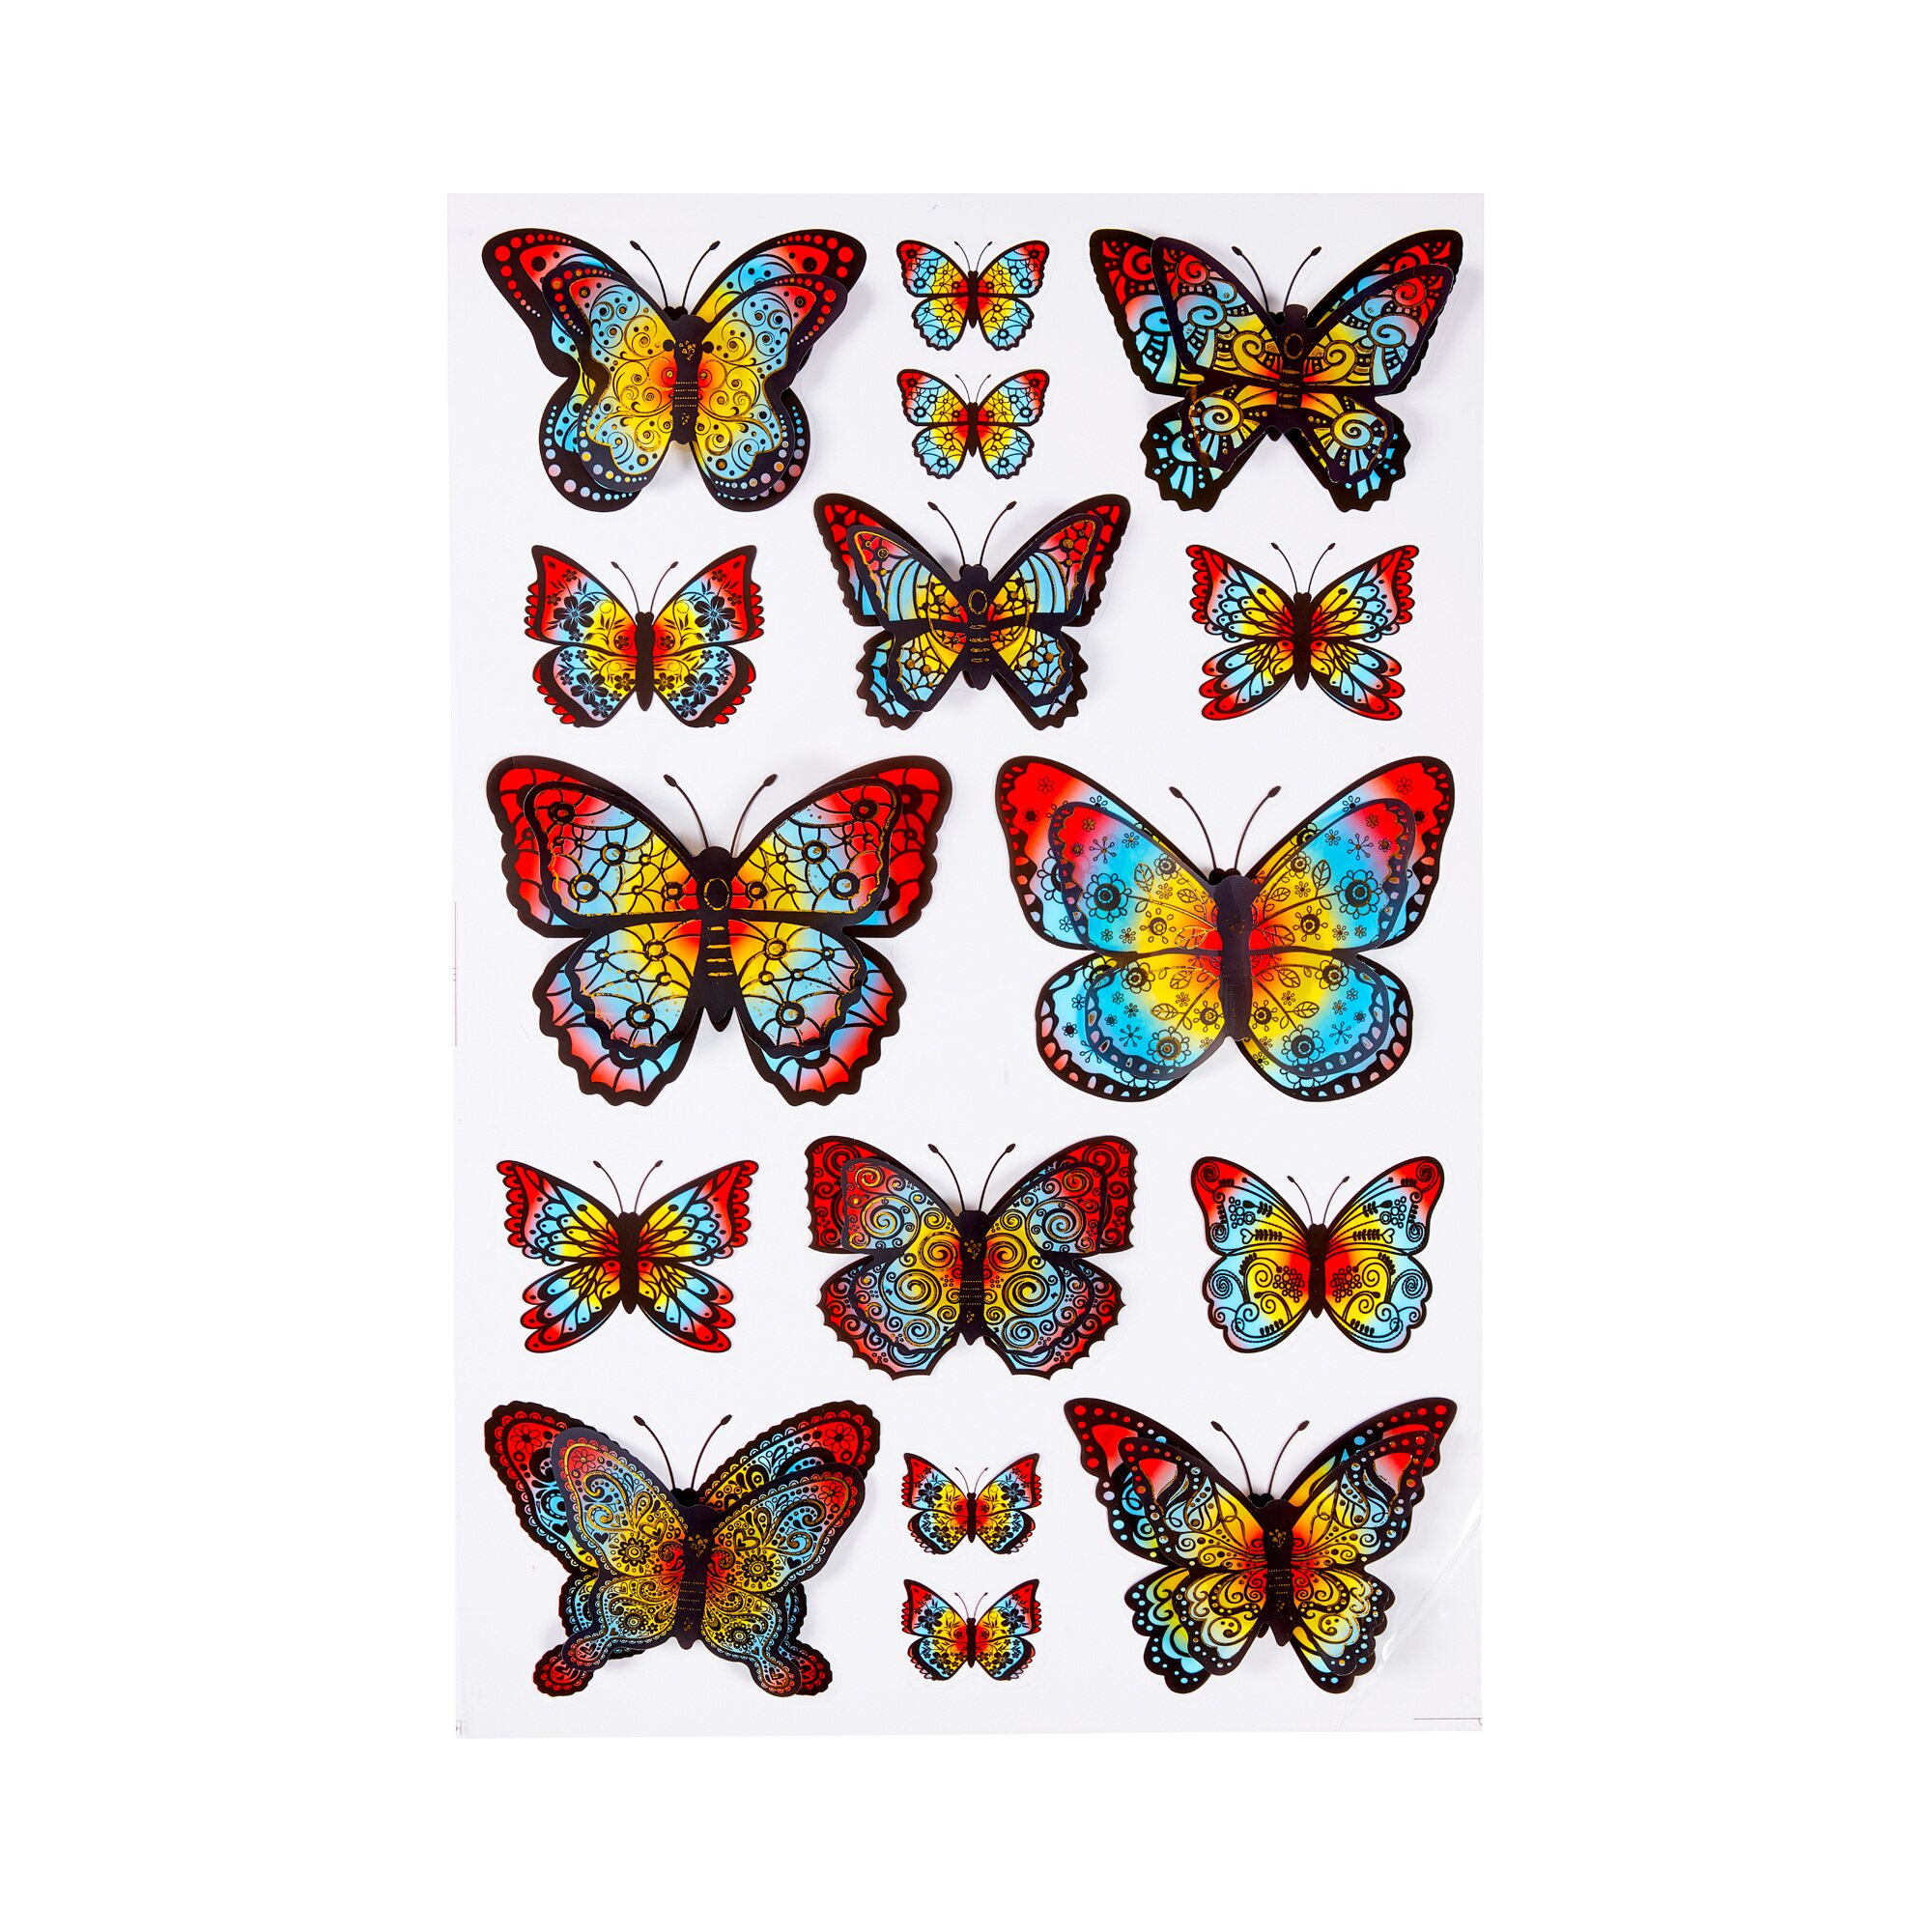 Autocollants 3D « Papillons arc-en-ciel », 16 pièces